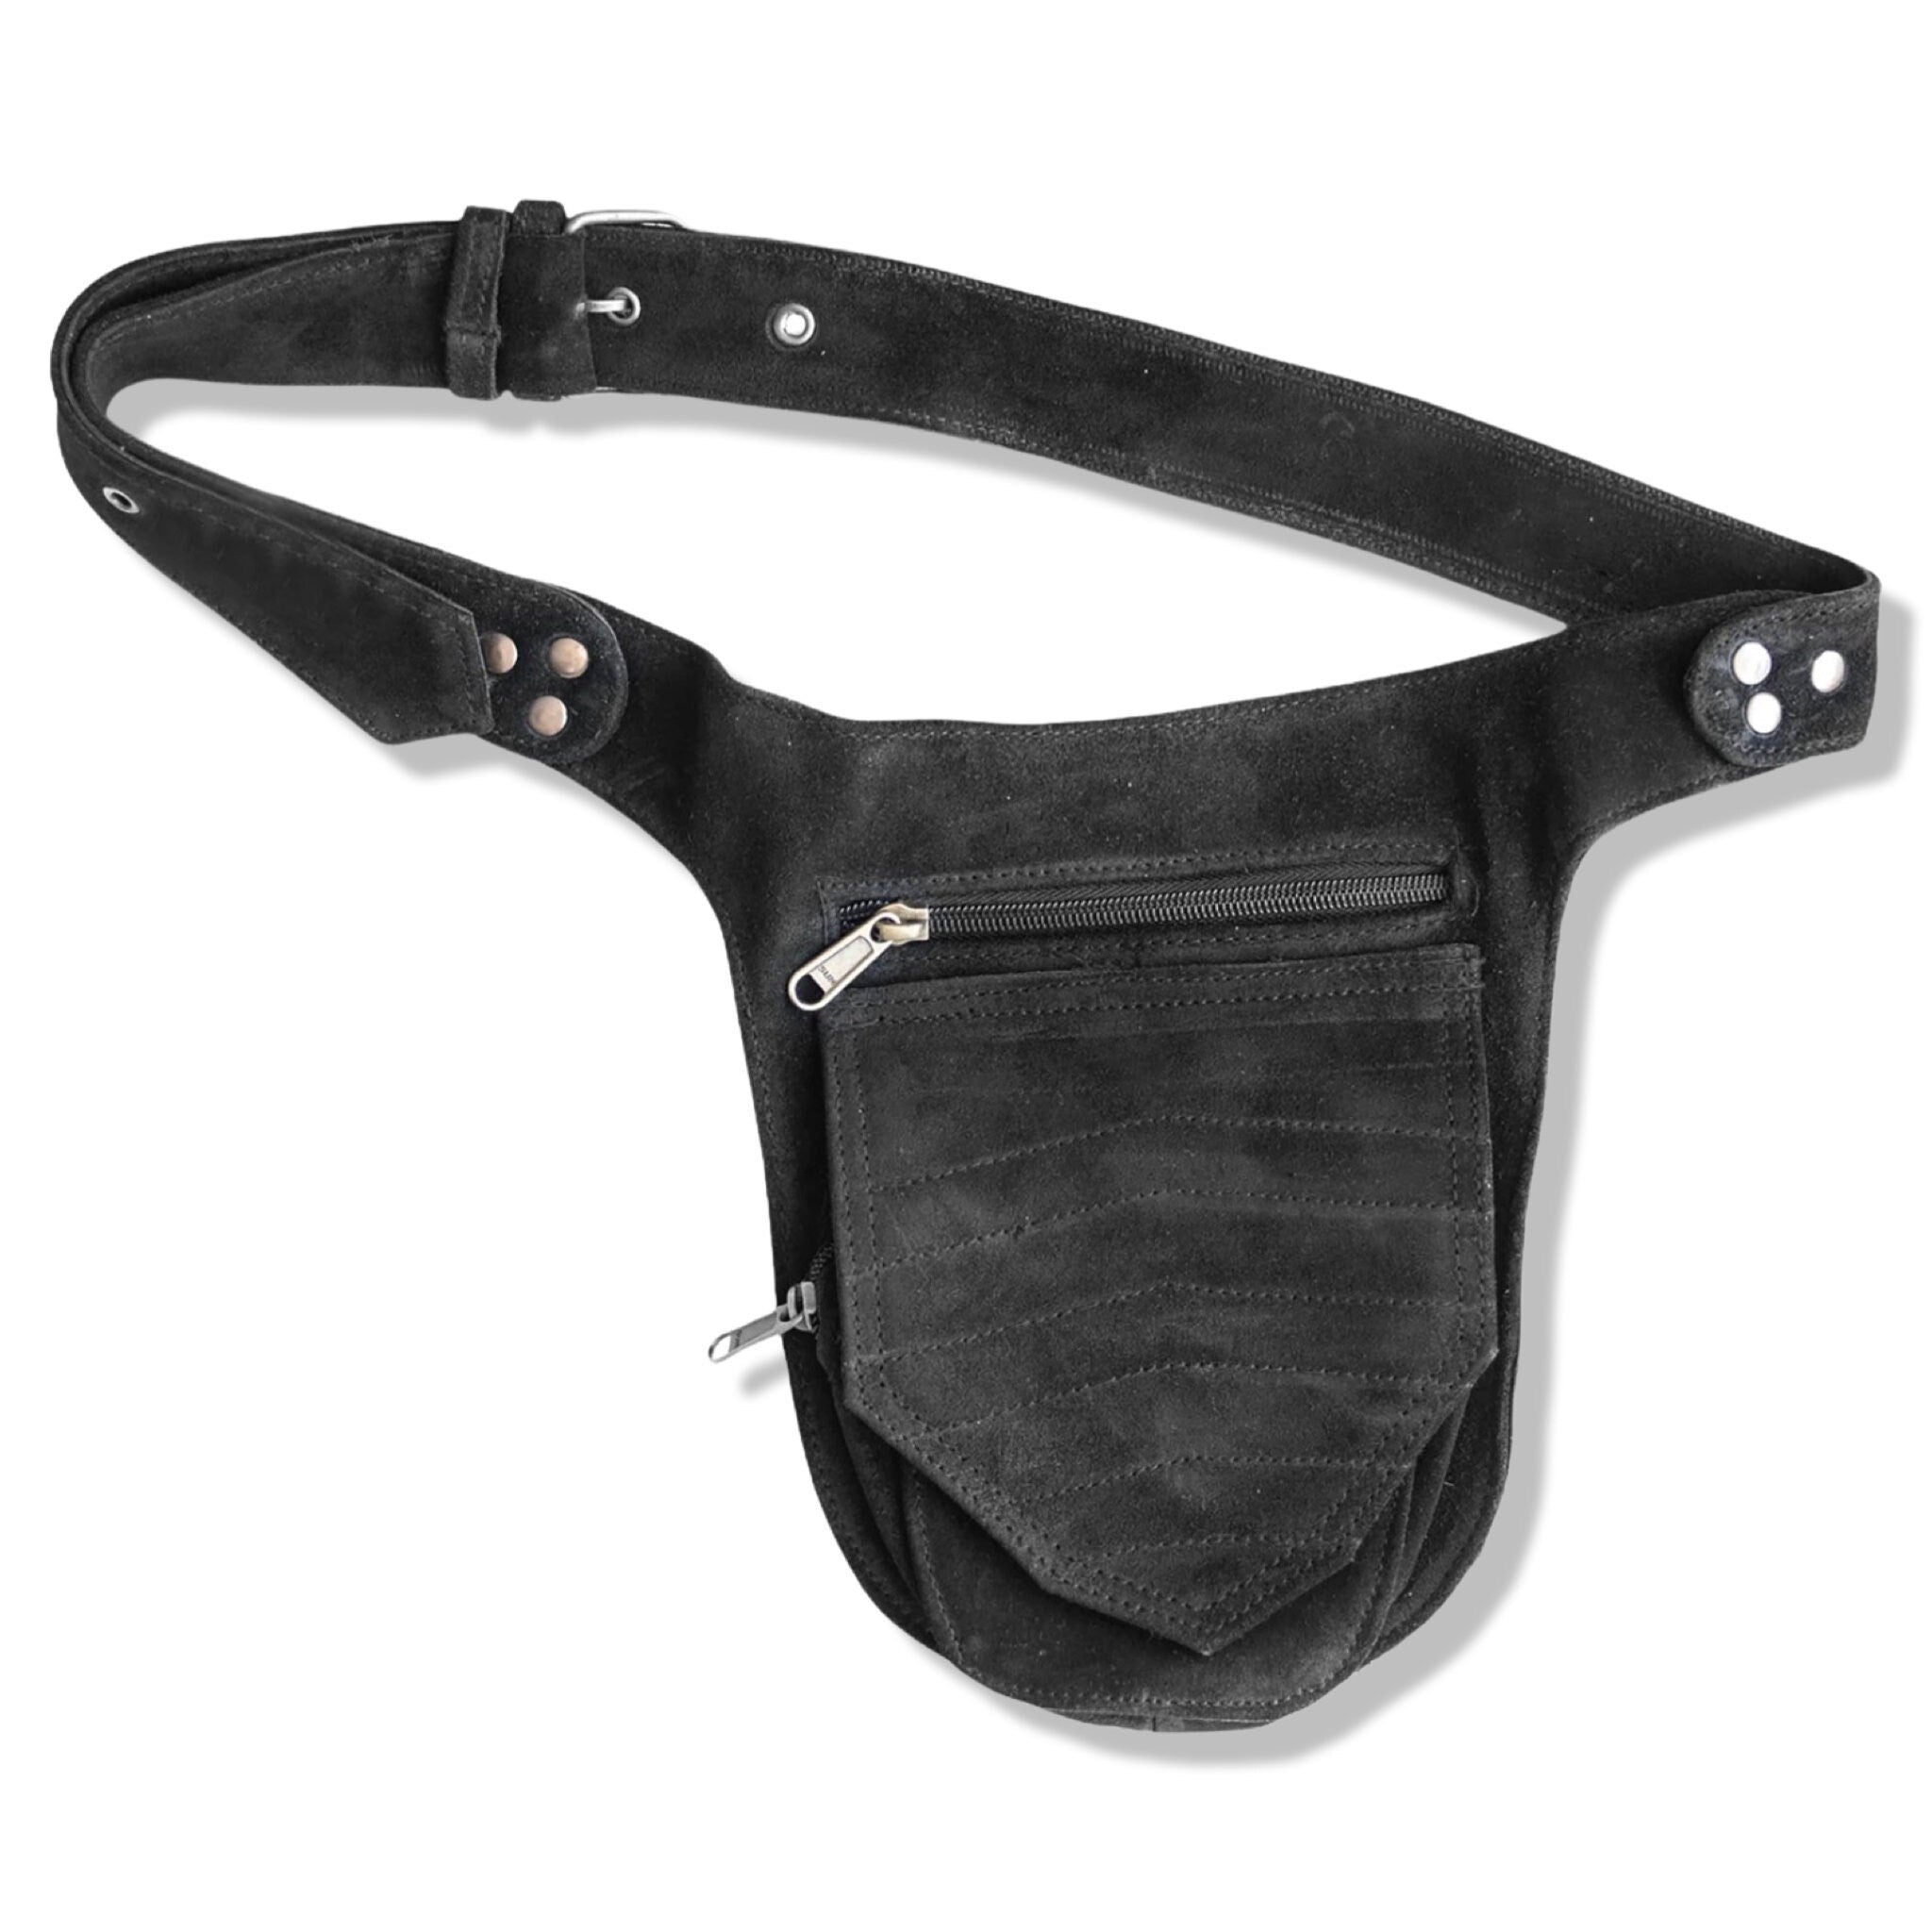 Unisex Leather Festival Pocket Belt | Black Suede | travel belt, fanny pack, vendor belt, sport bag, burning man, playa wear, dog walker bag